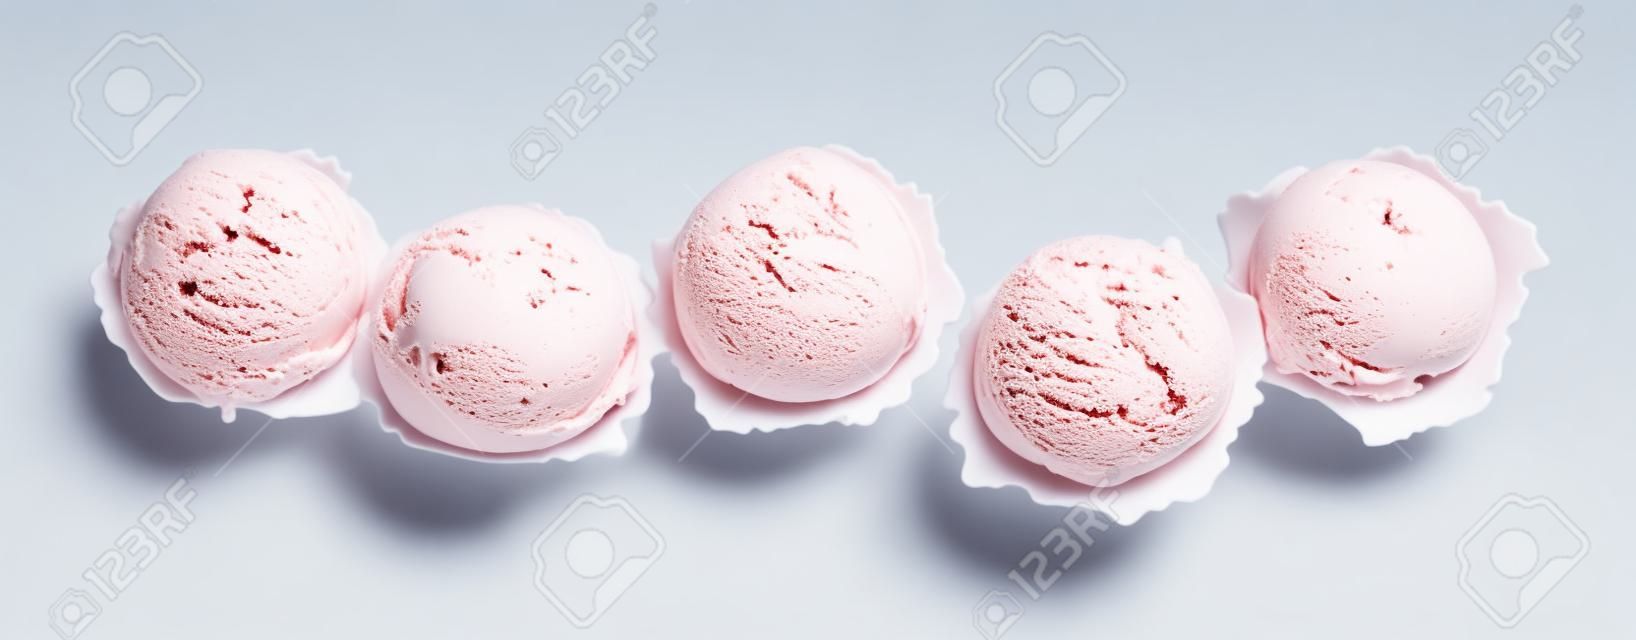 Alto ângulo ainda vida vista de cinco colheres de sorvete colorido e refrescante na frente do fundo branco